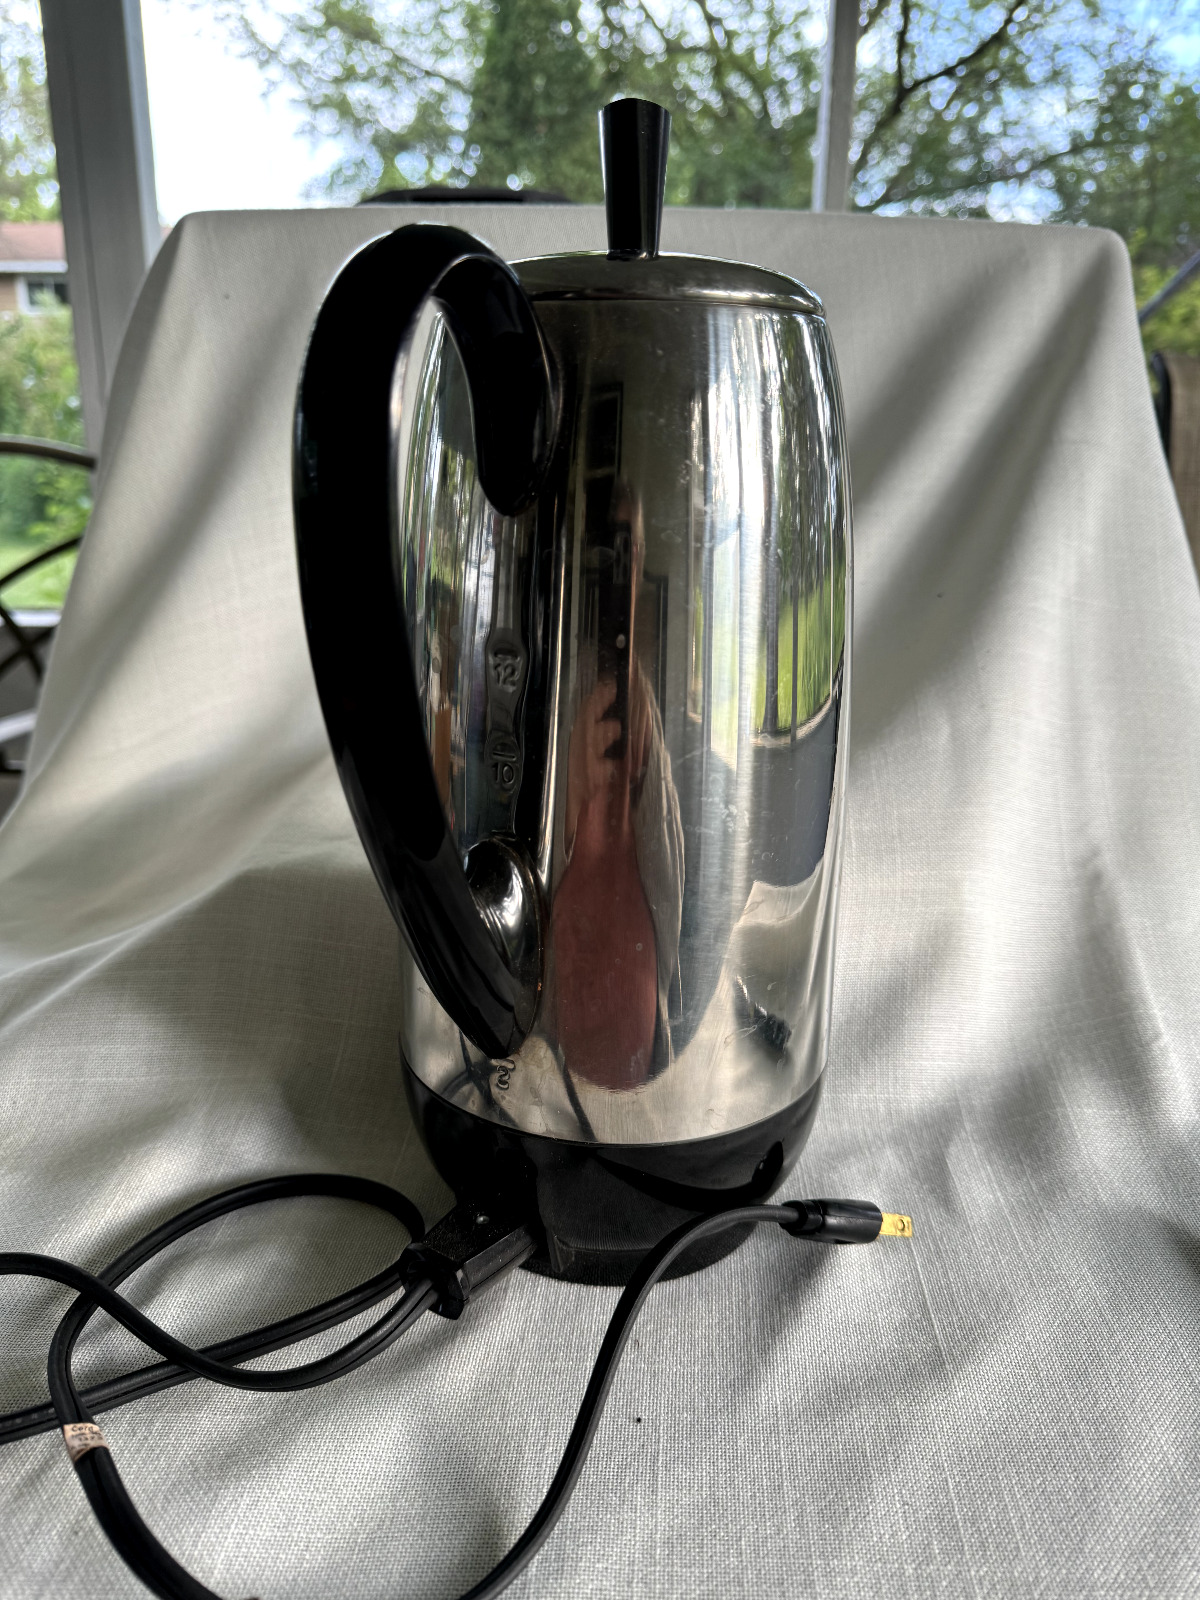 Farberware 12 Cup Automatic Coffee Percolator Pot  Super Fast and Super Clean